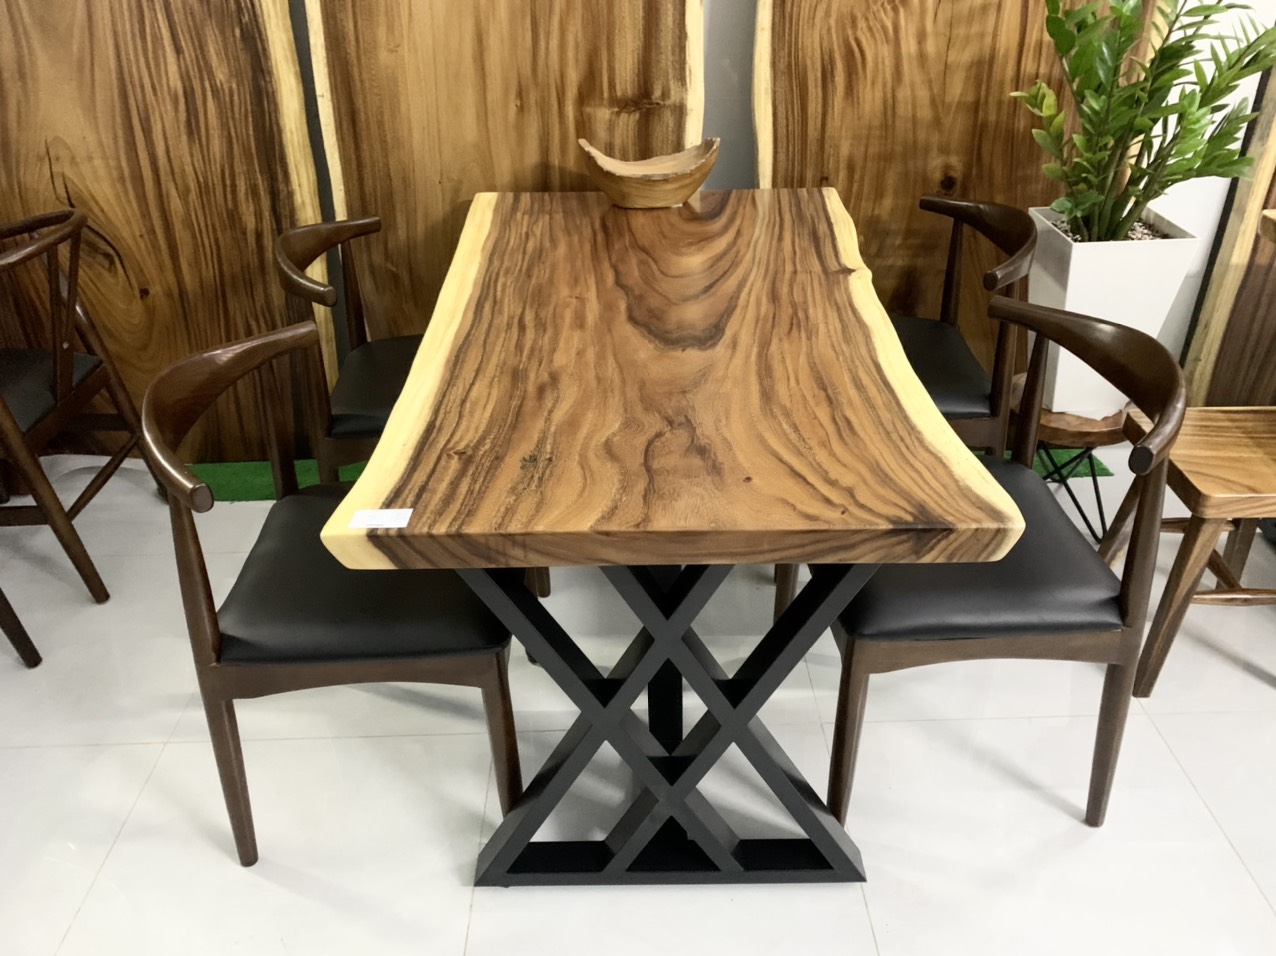 Bộ bàn ghế ăn gỗ nguyên khối của năm 2024 là sự kết hợp hoàn hảo giữa thiết kế hiện đại và đế chắc chắn. Các mẫu bàn ghế được thiết kế tinh tế, có độ hoàn thiện cao. Sản phẩm này không chỉ đáp ứng nhu cầu sử dụng mà còn mang lại cảm giác ấm cúng, gia đình vui vẻ trong mỗi bữa ăn.